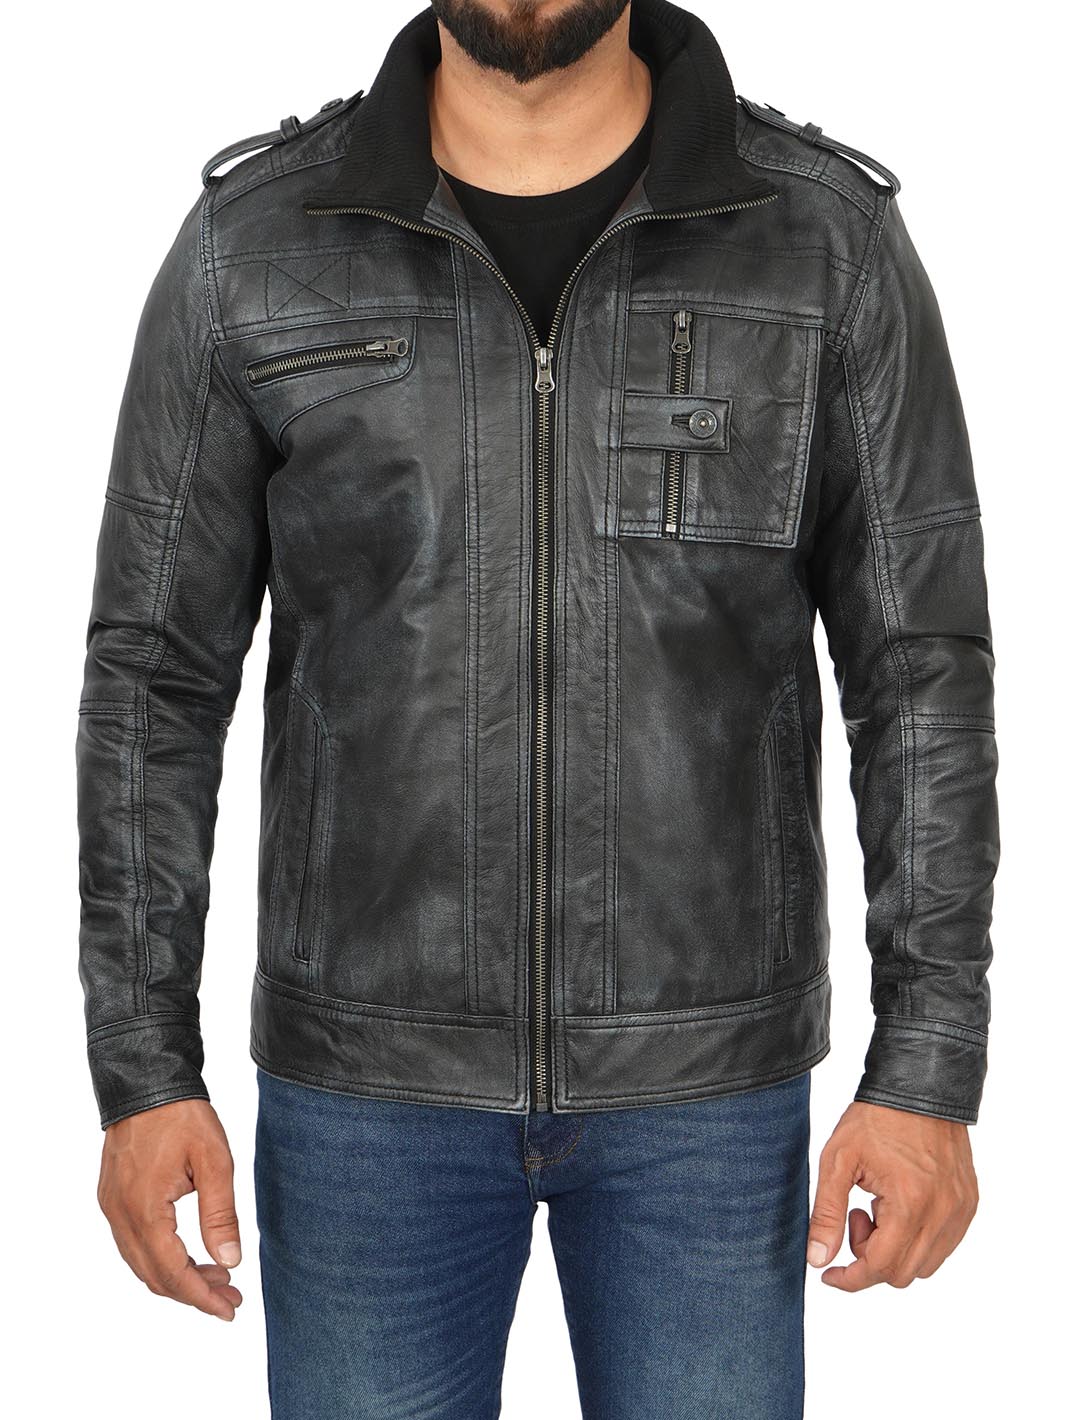 Tavares Black Leather Jacket Mens